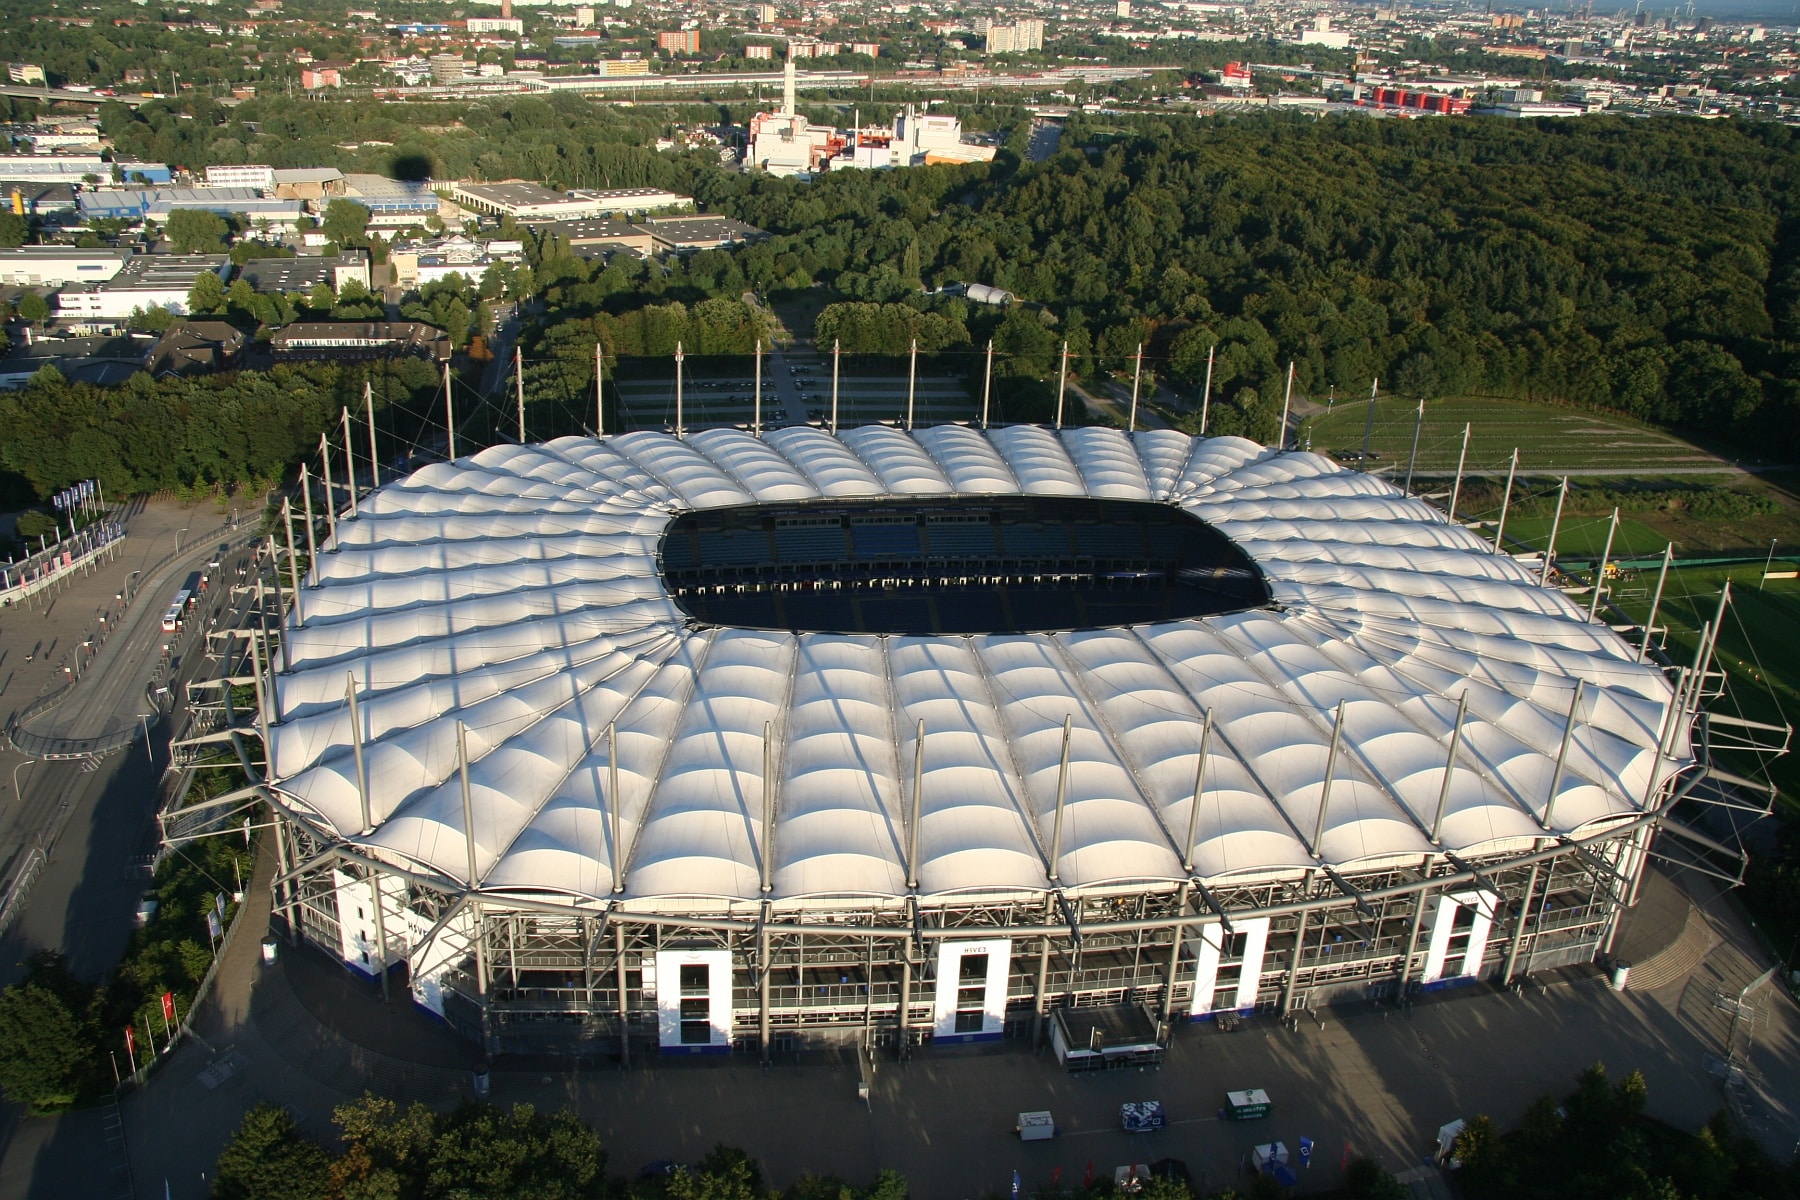 Foto 2: Das Dach des Volksparkstadions besteht aus 40 transparenten Feldern. Foto: Reinhard Kraasch, CC-BY-SA 4.0 via Wikimedia Commons